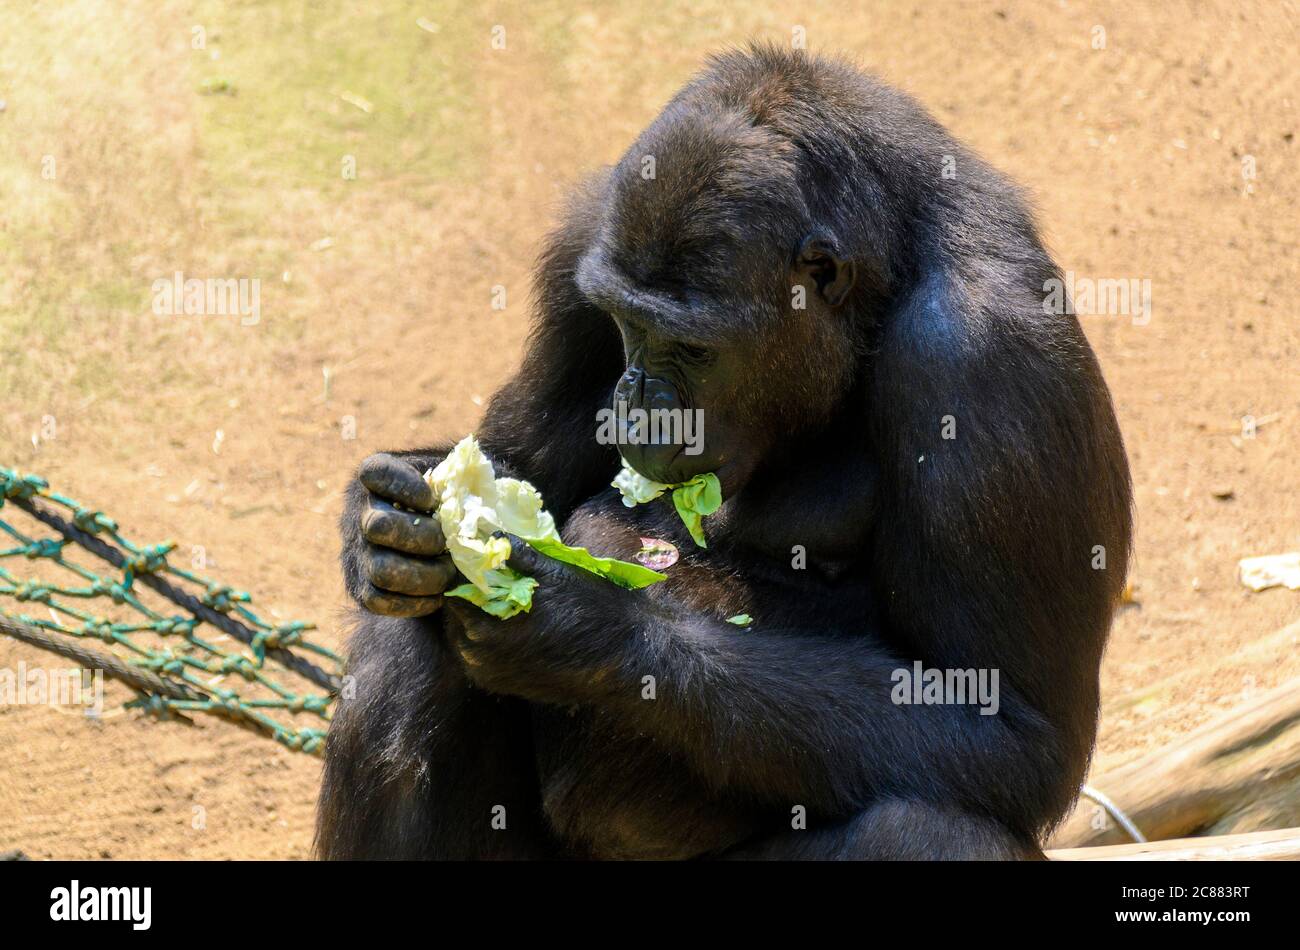 Junge Gorilla sitzt auf einem Netz und isst grünes Salatblatt Stockfoto